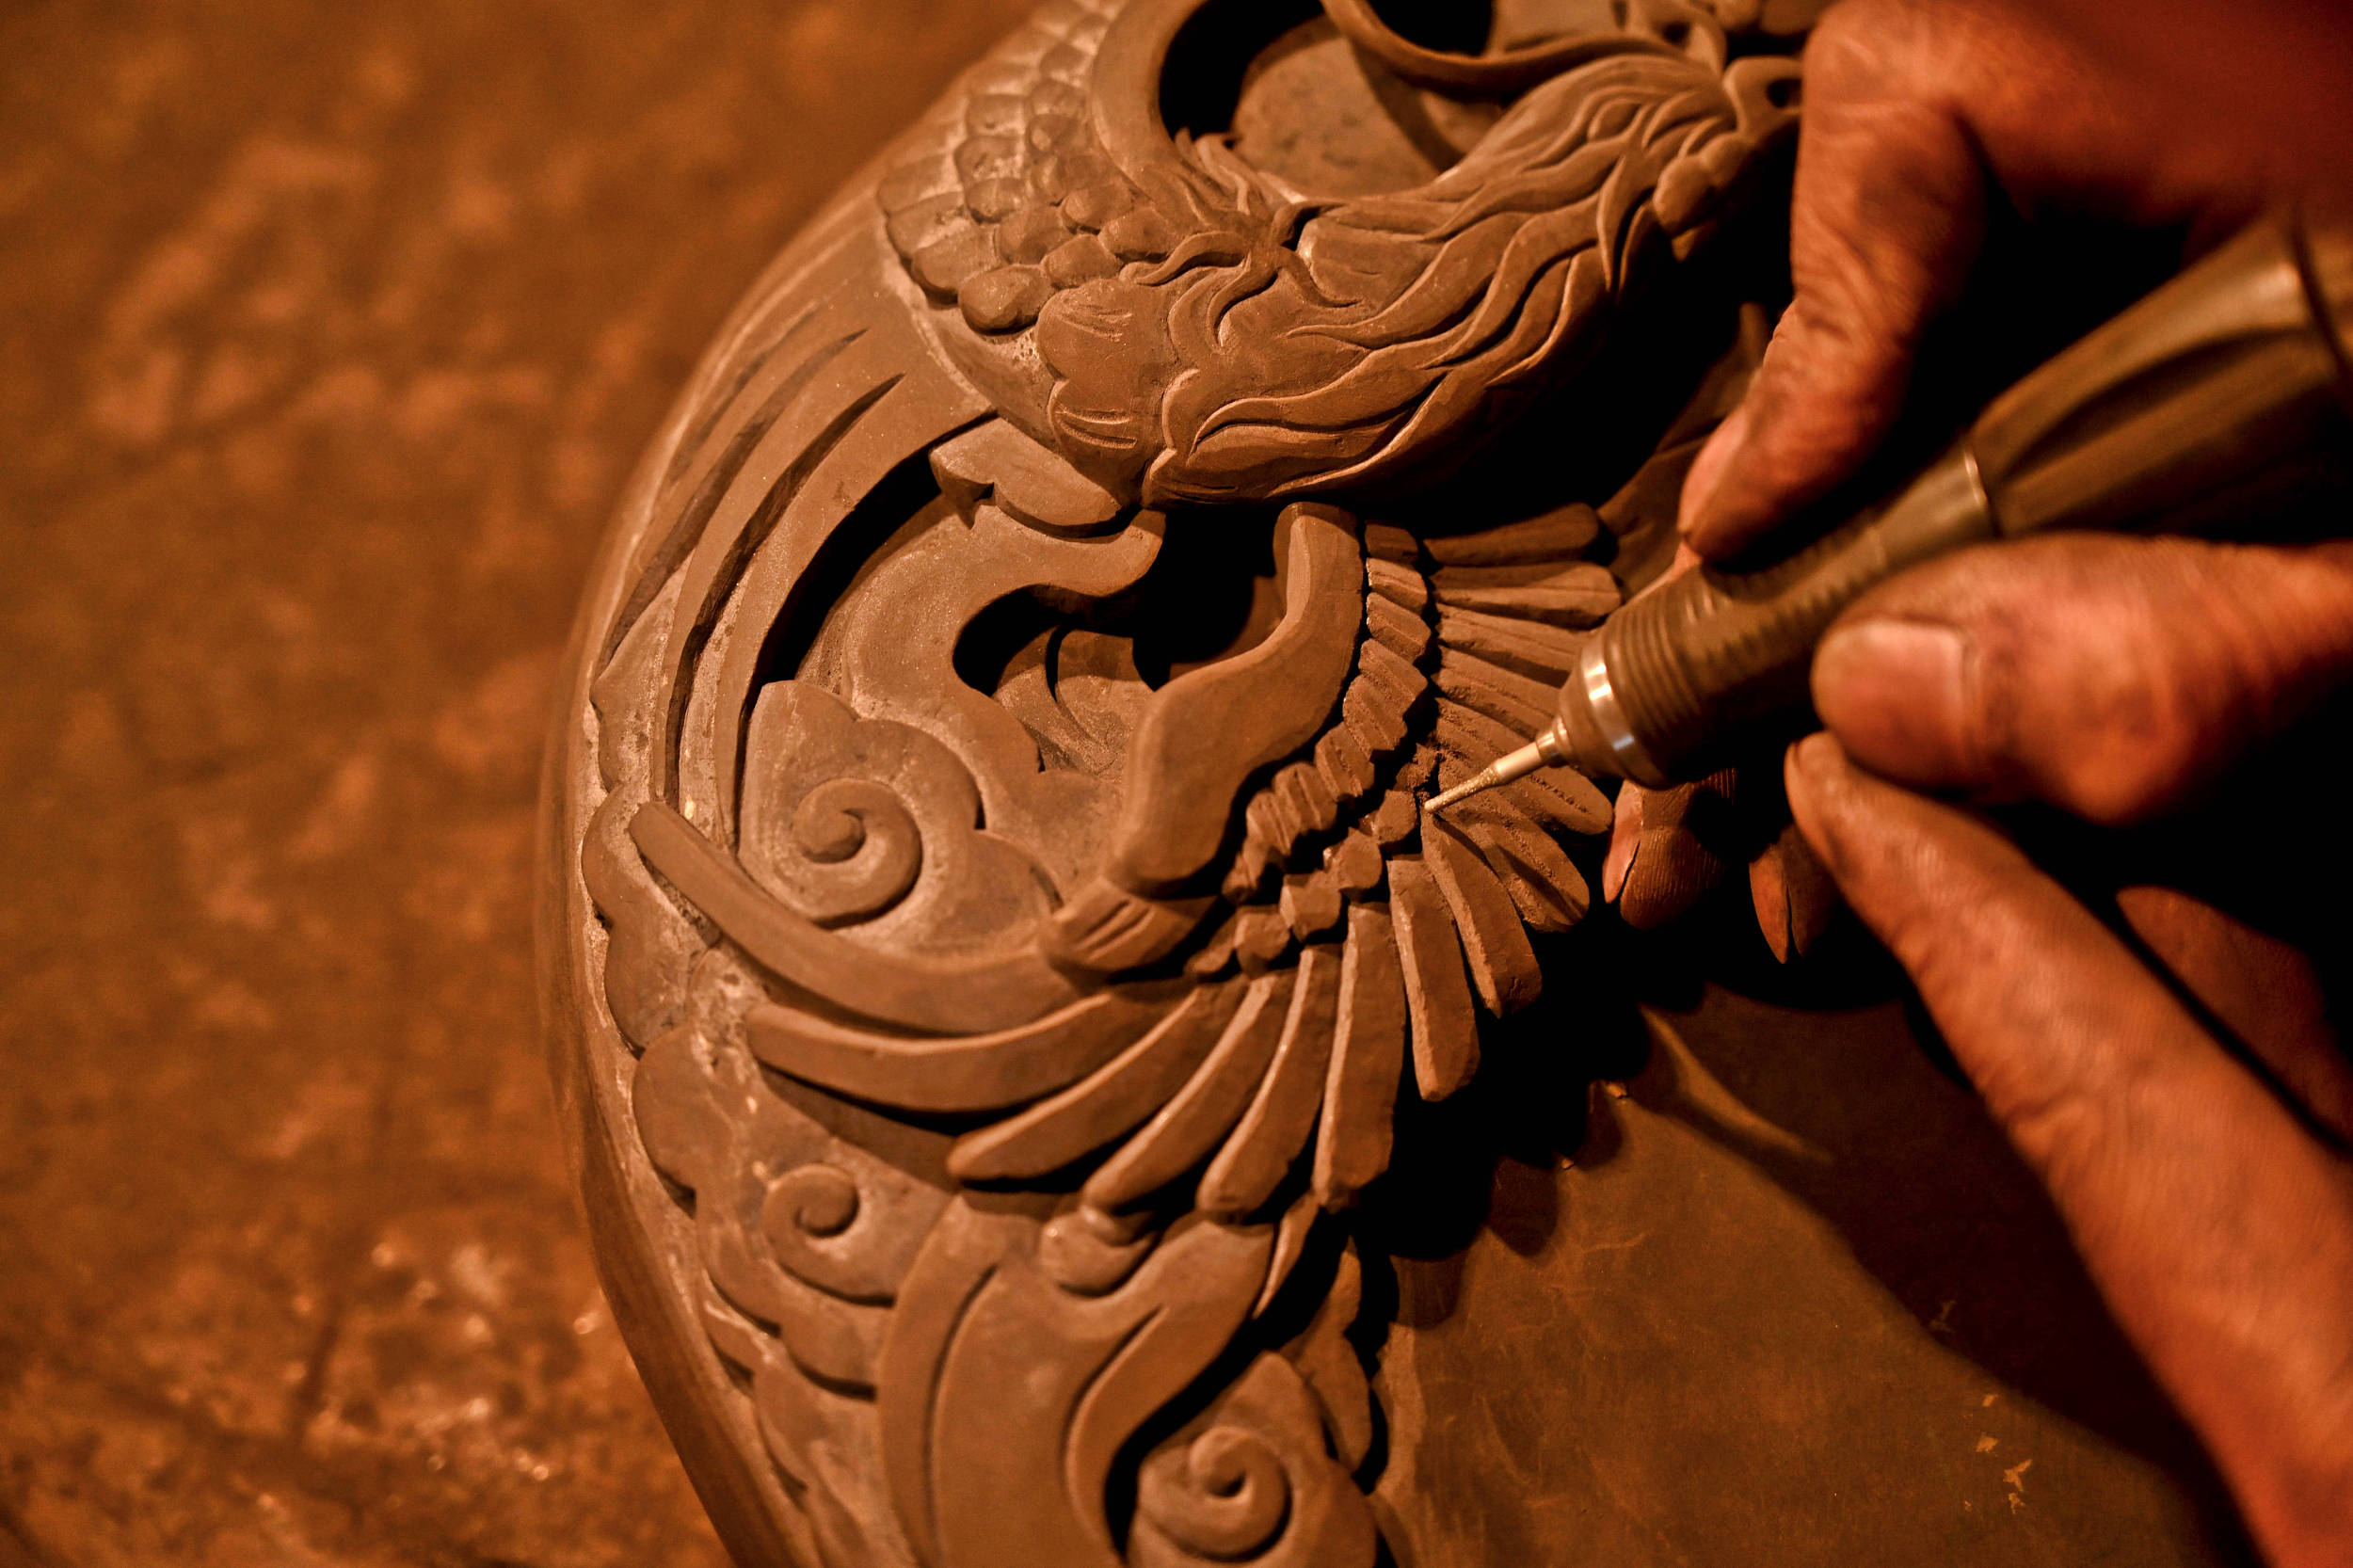 图片故事：贵州23岁小伙传承4千年思州石砚技艺 4年手工打200块砚台--